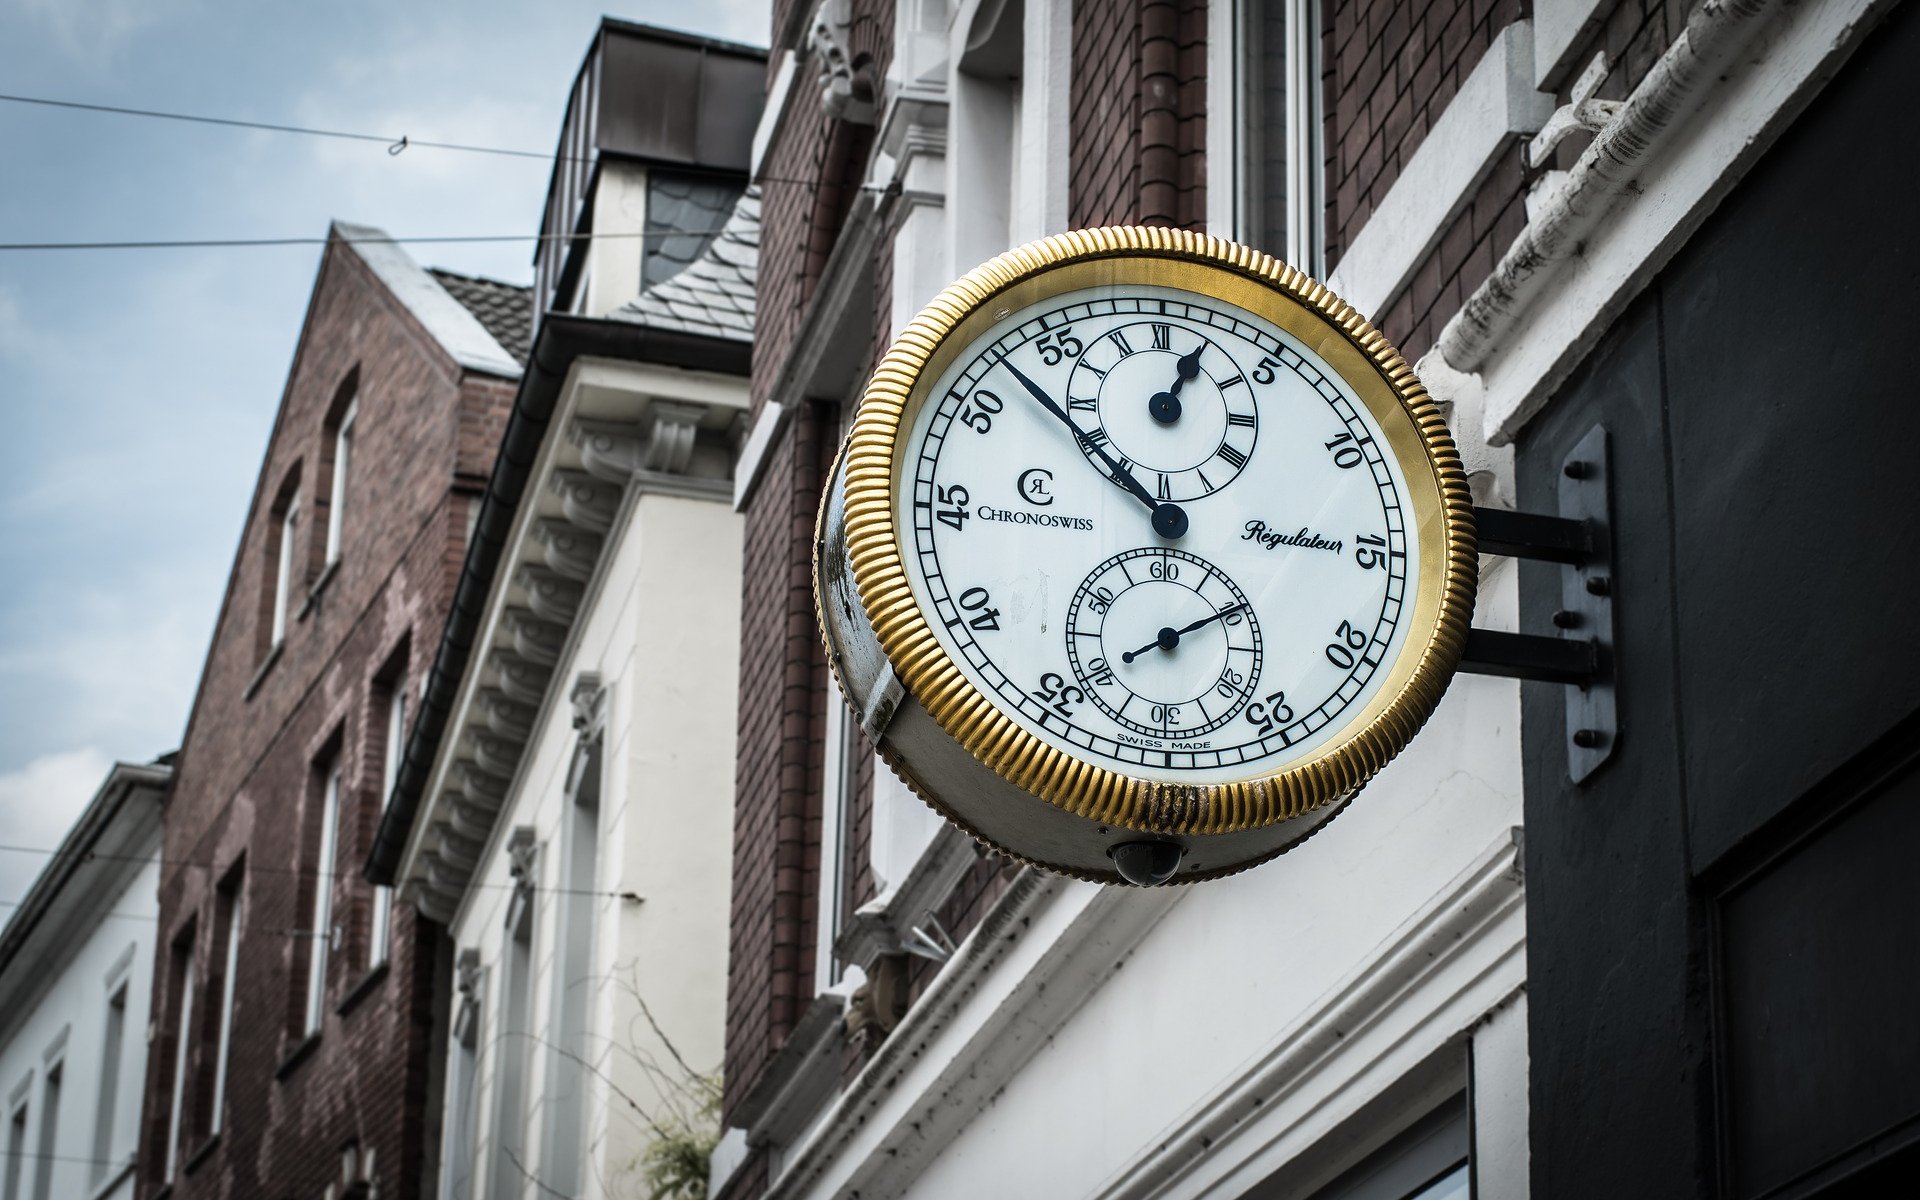 Городские часы. Часы на улице. Часы на здании. Часы на улицах города. Нижний город время часы